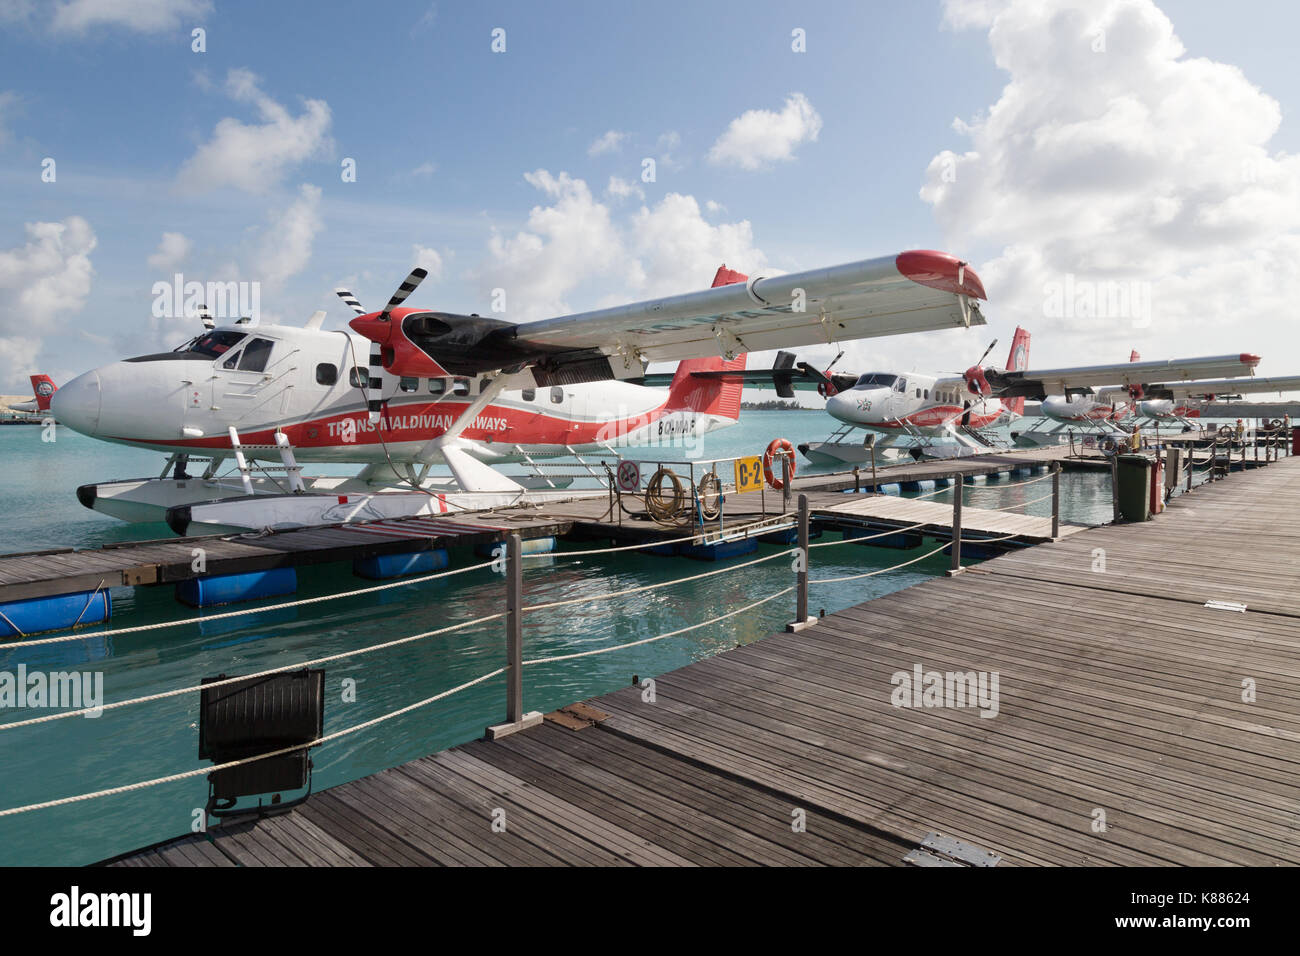 Maldives Airport Stockfotos und -bilder Kaufen - Alamy